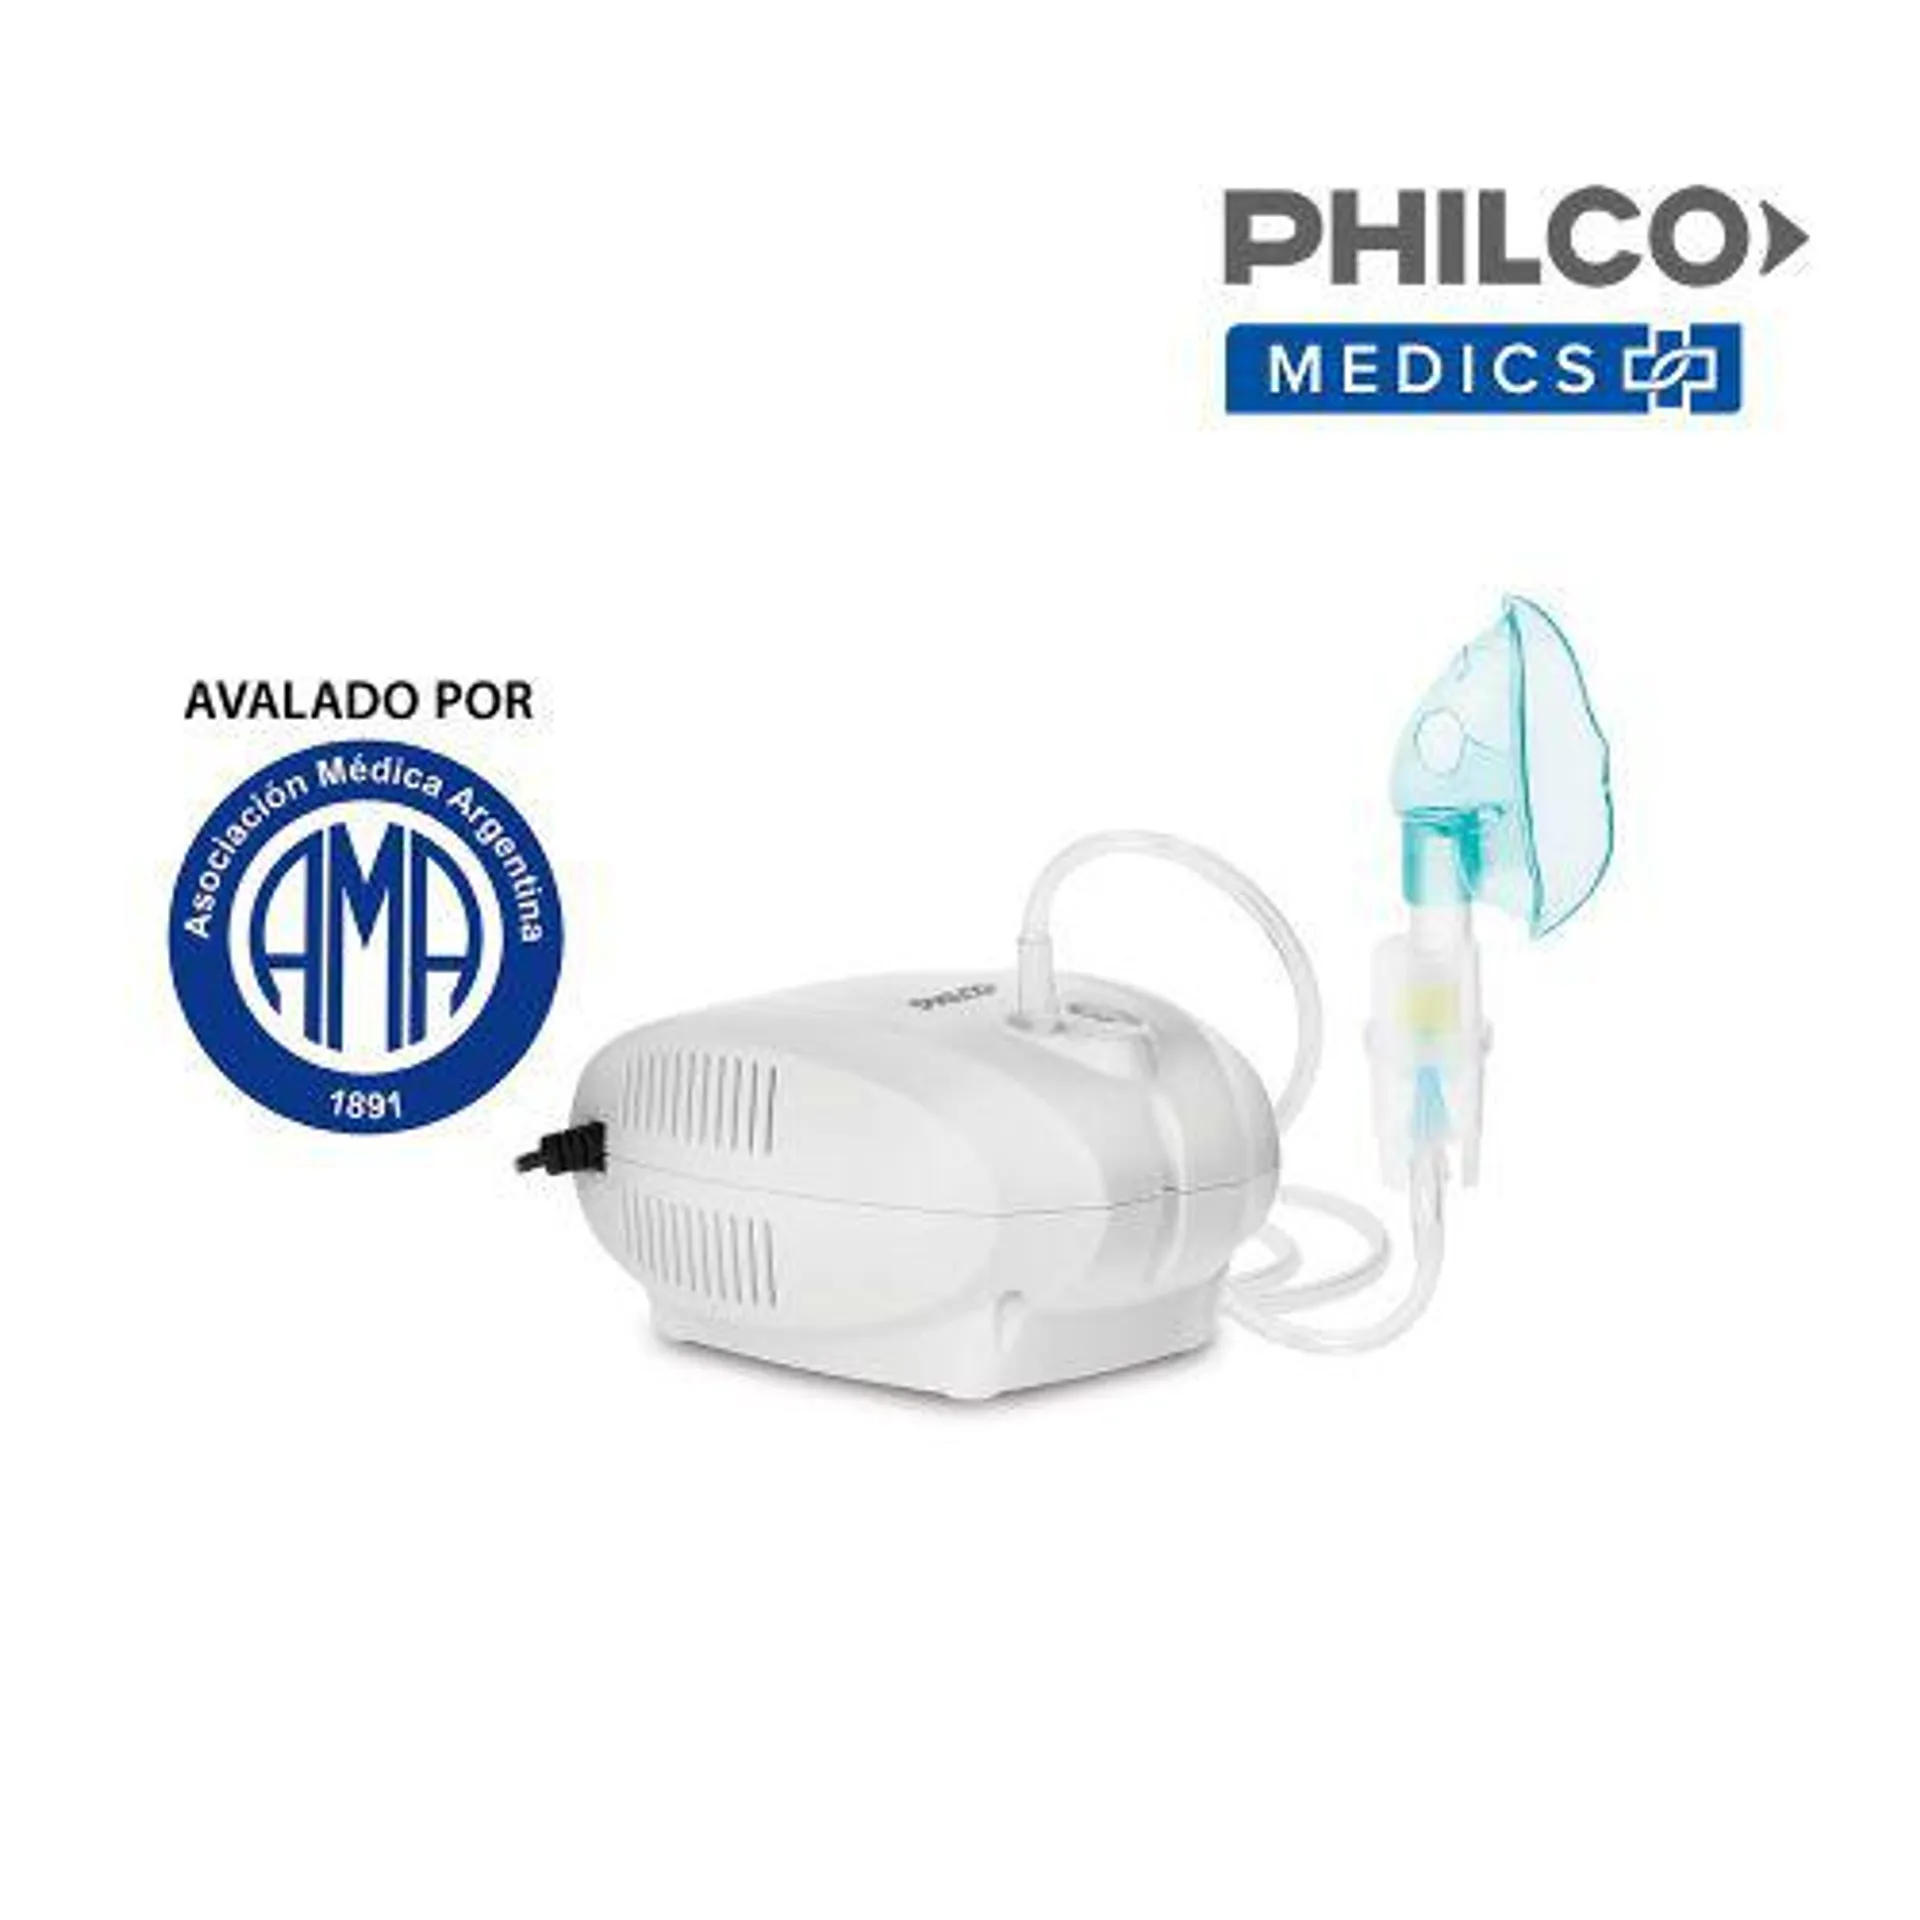 Philco A500lw00 Nebulizador Compacto Silencioso Adul/pediat